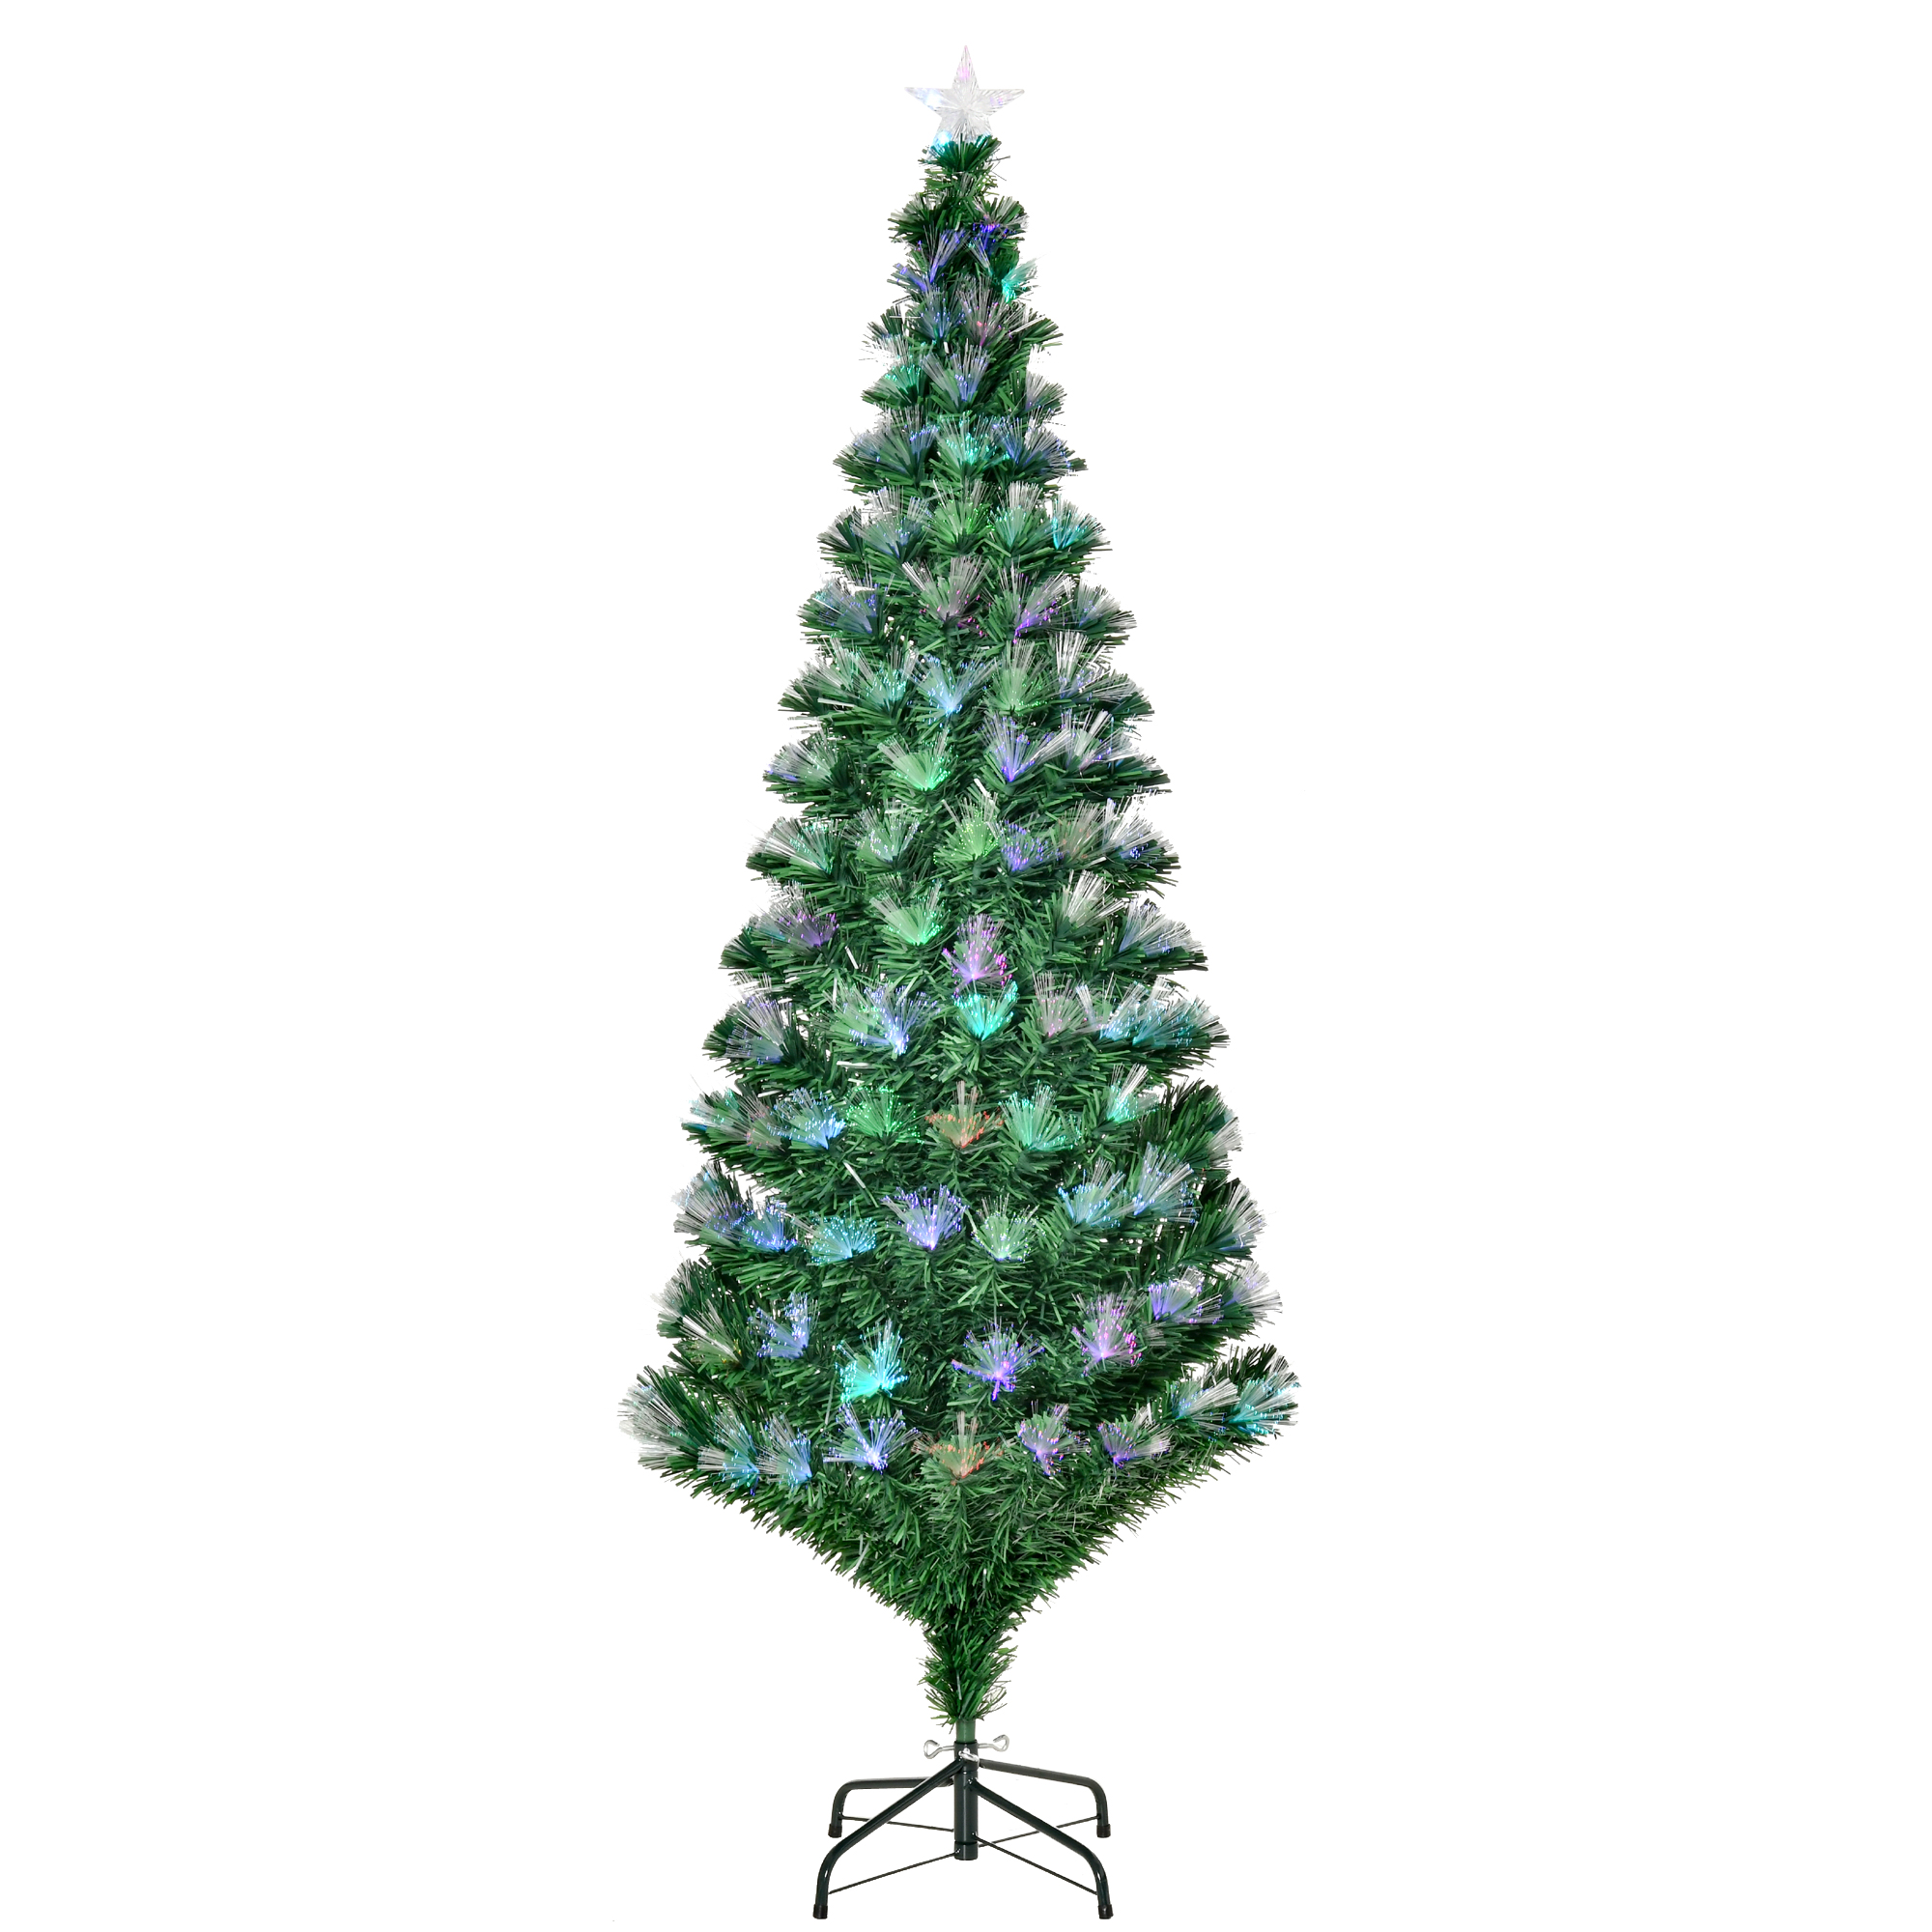 Χριστουγεννιάτικο Δέντρο με 230 Φωτάκια LED και Έγχρωμες Οπτικές Ίνες 180 cm HOMCOM 830-023